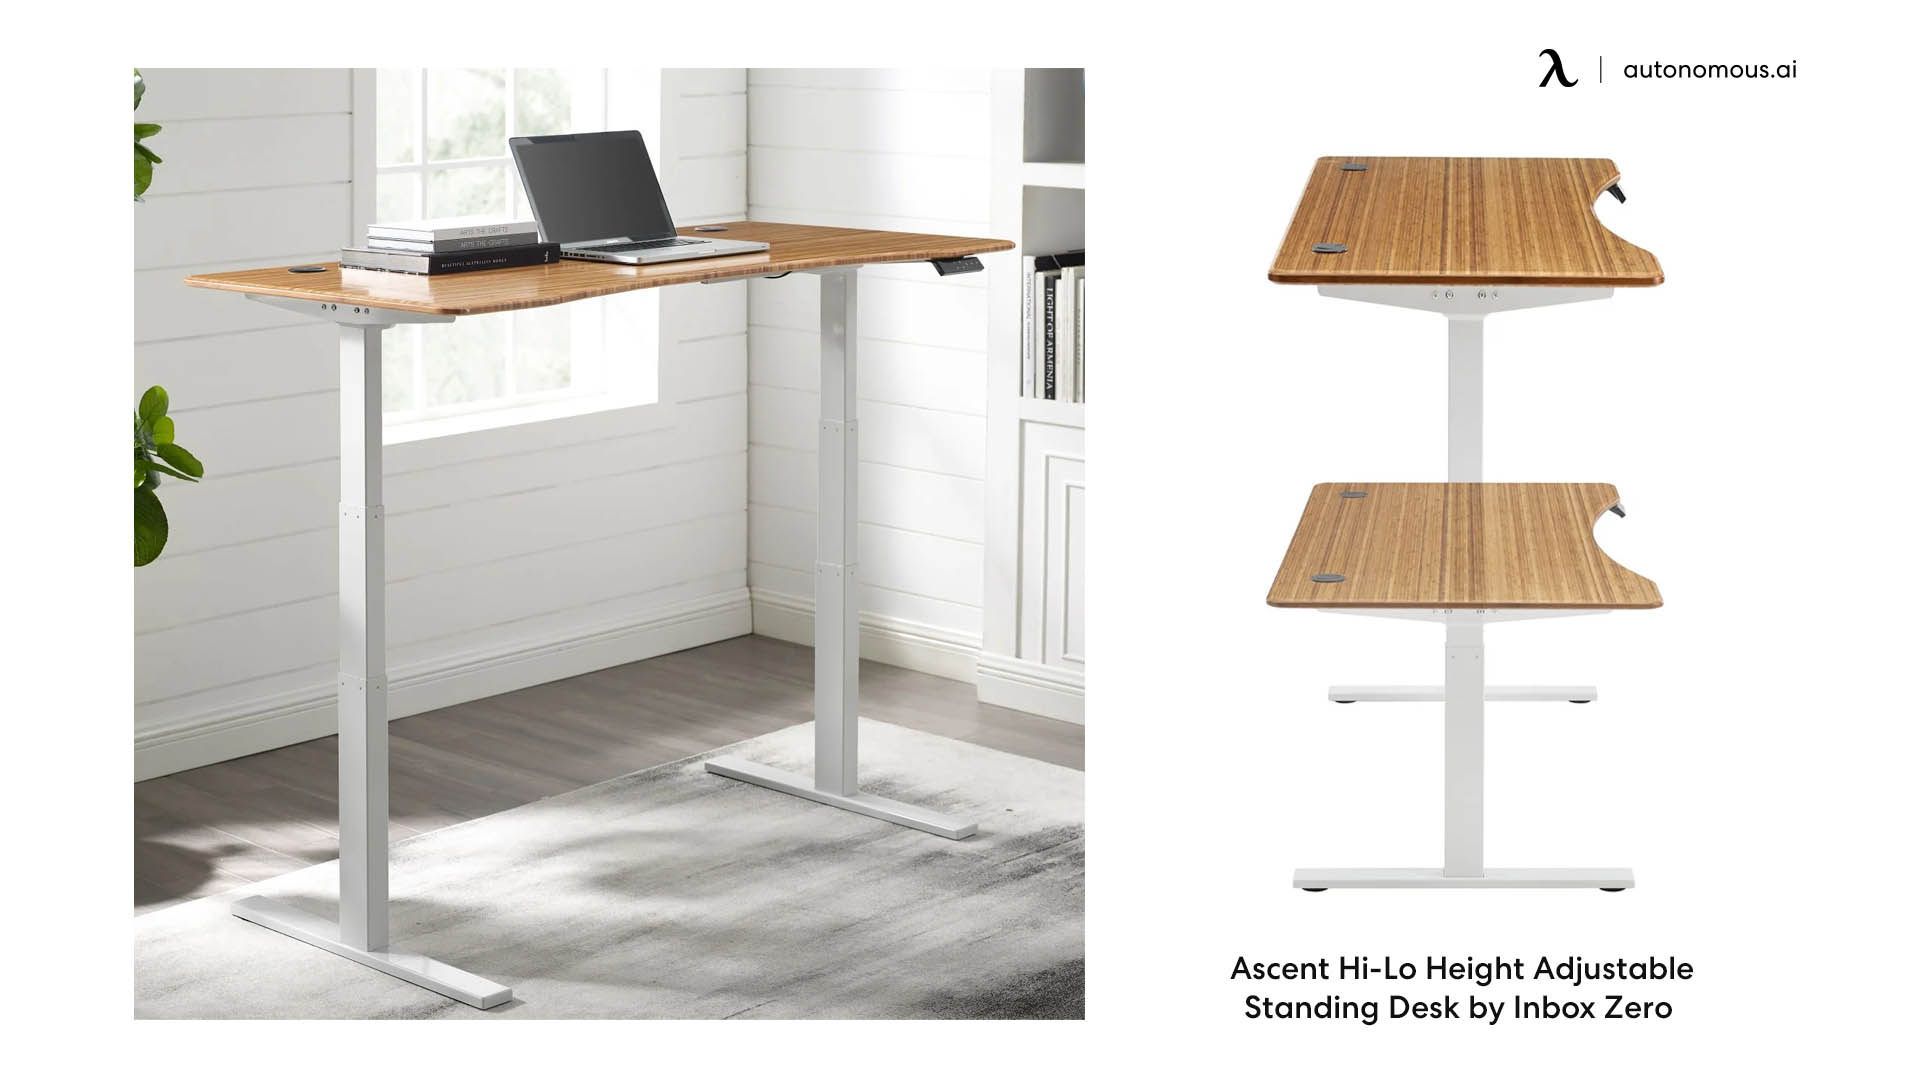 Ascent Hi-Lo Height Adjustable Standing Desk by Inbox Zero